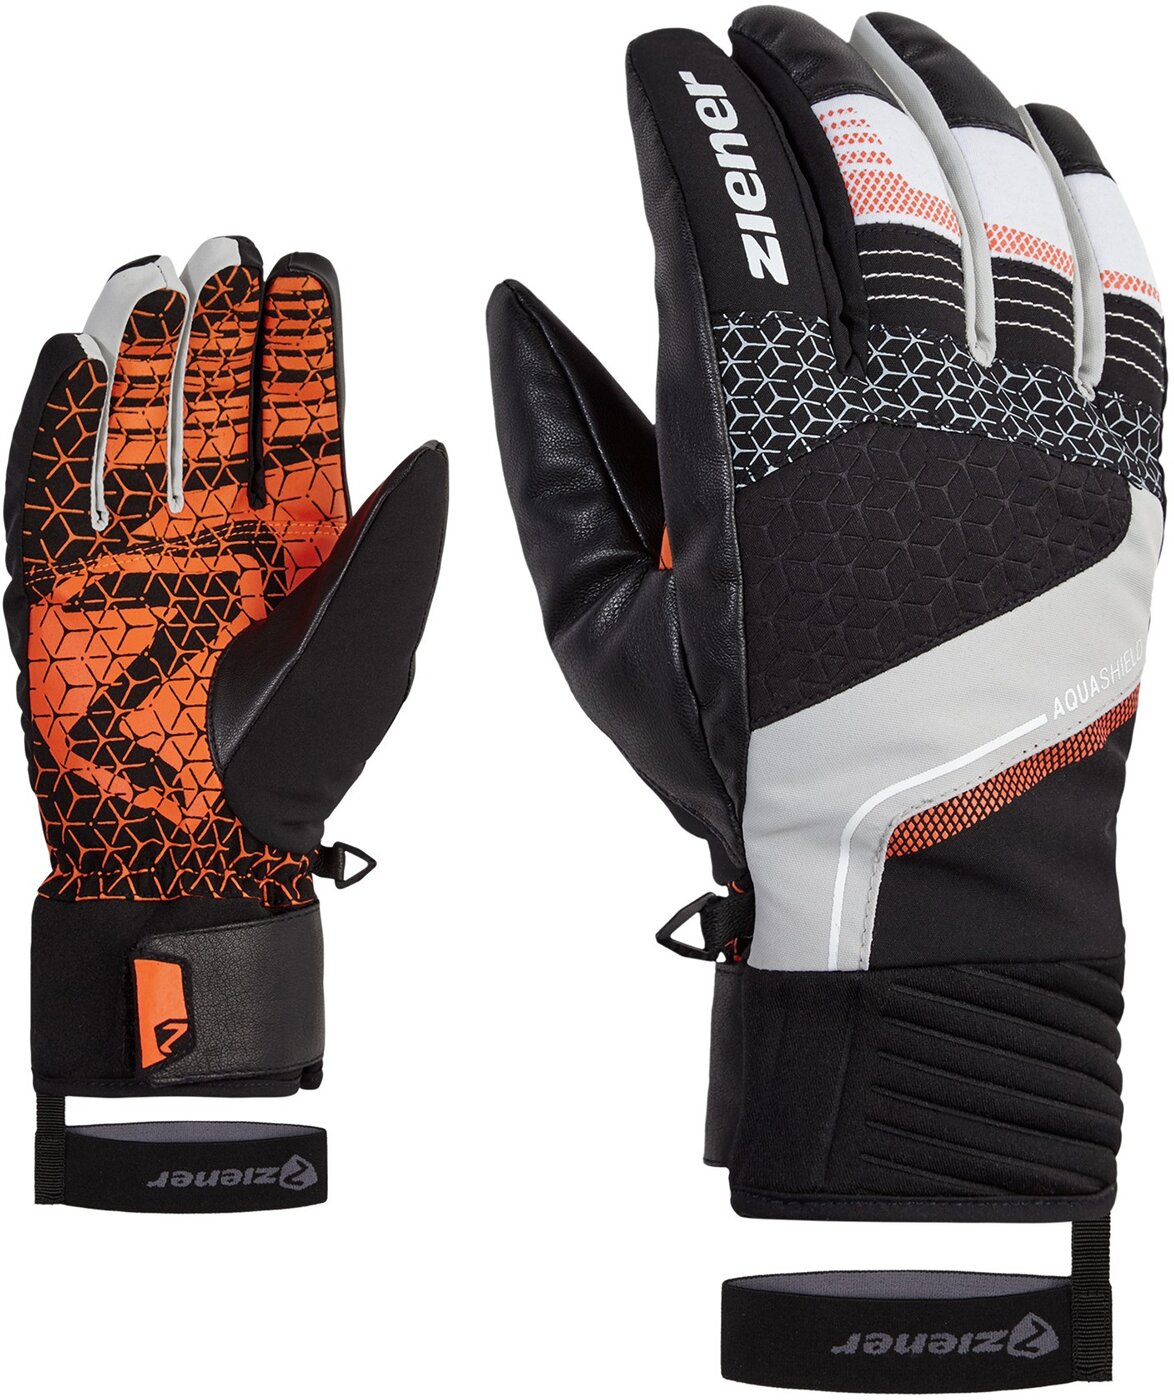 ZIENER GONZALO AS(R) glove ski alpine dusty grey online kaufen